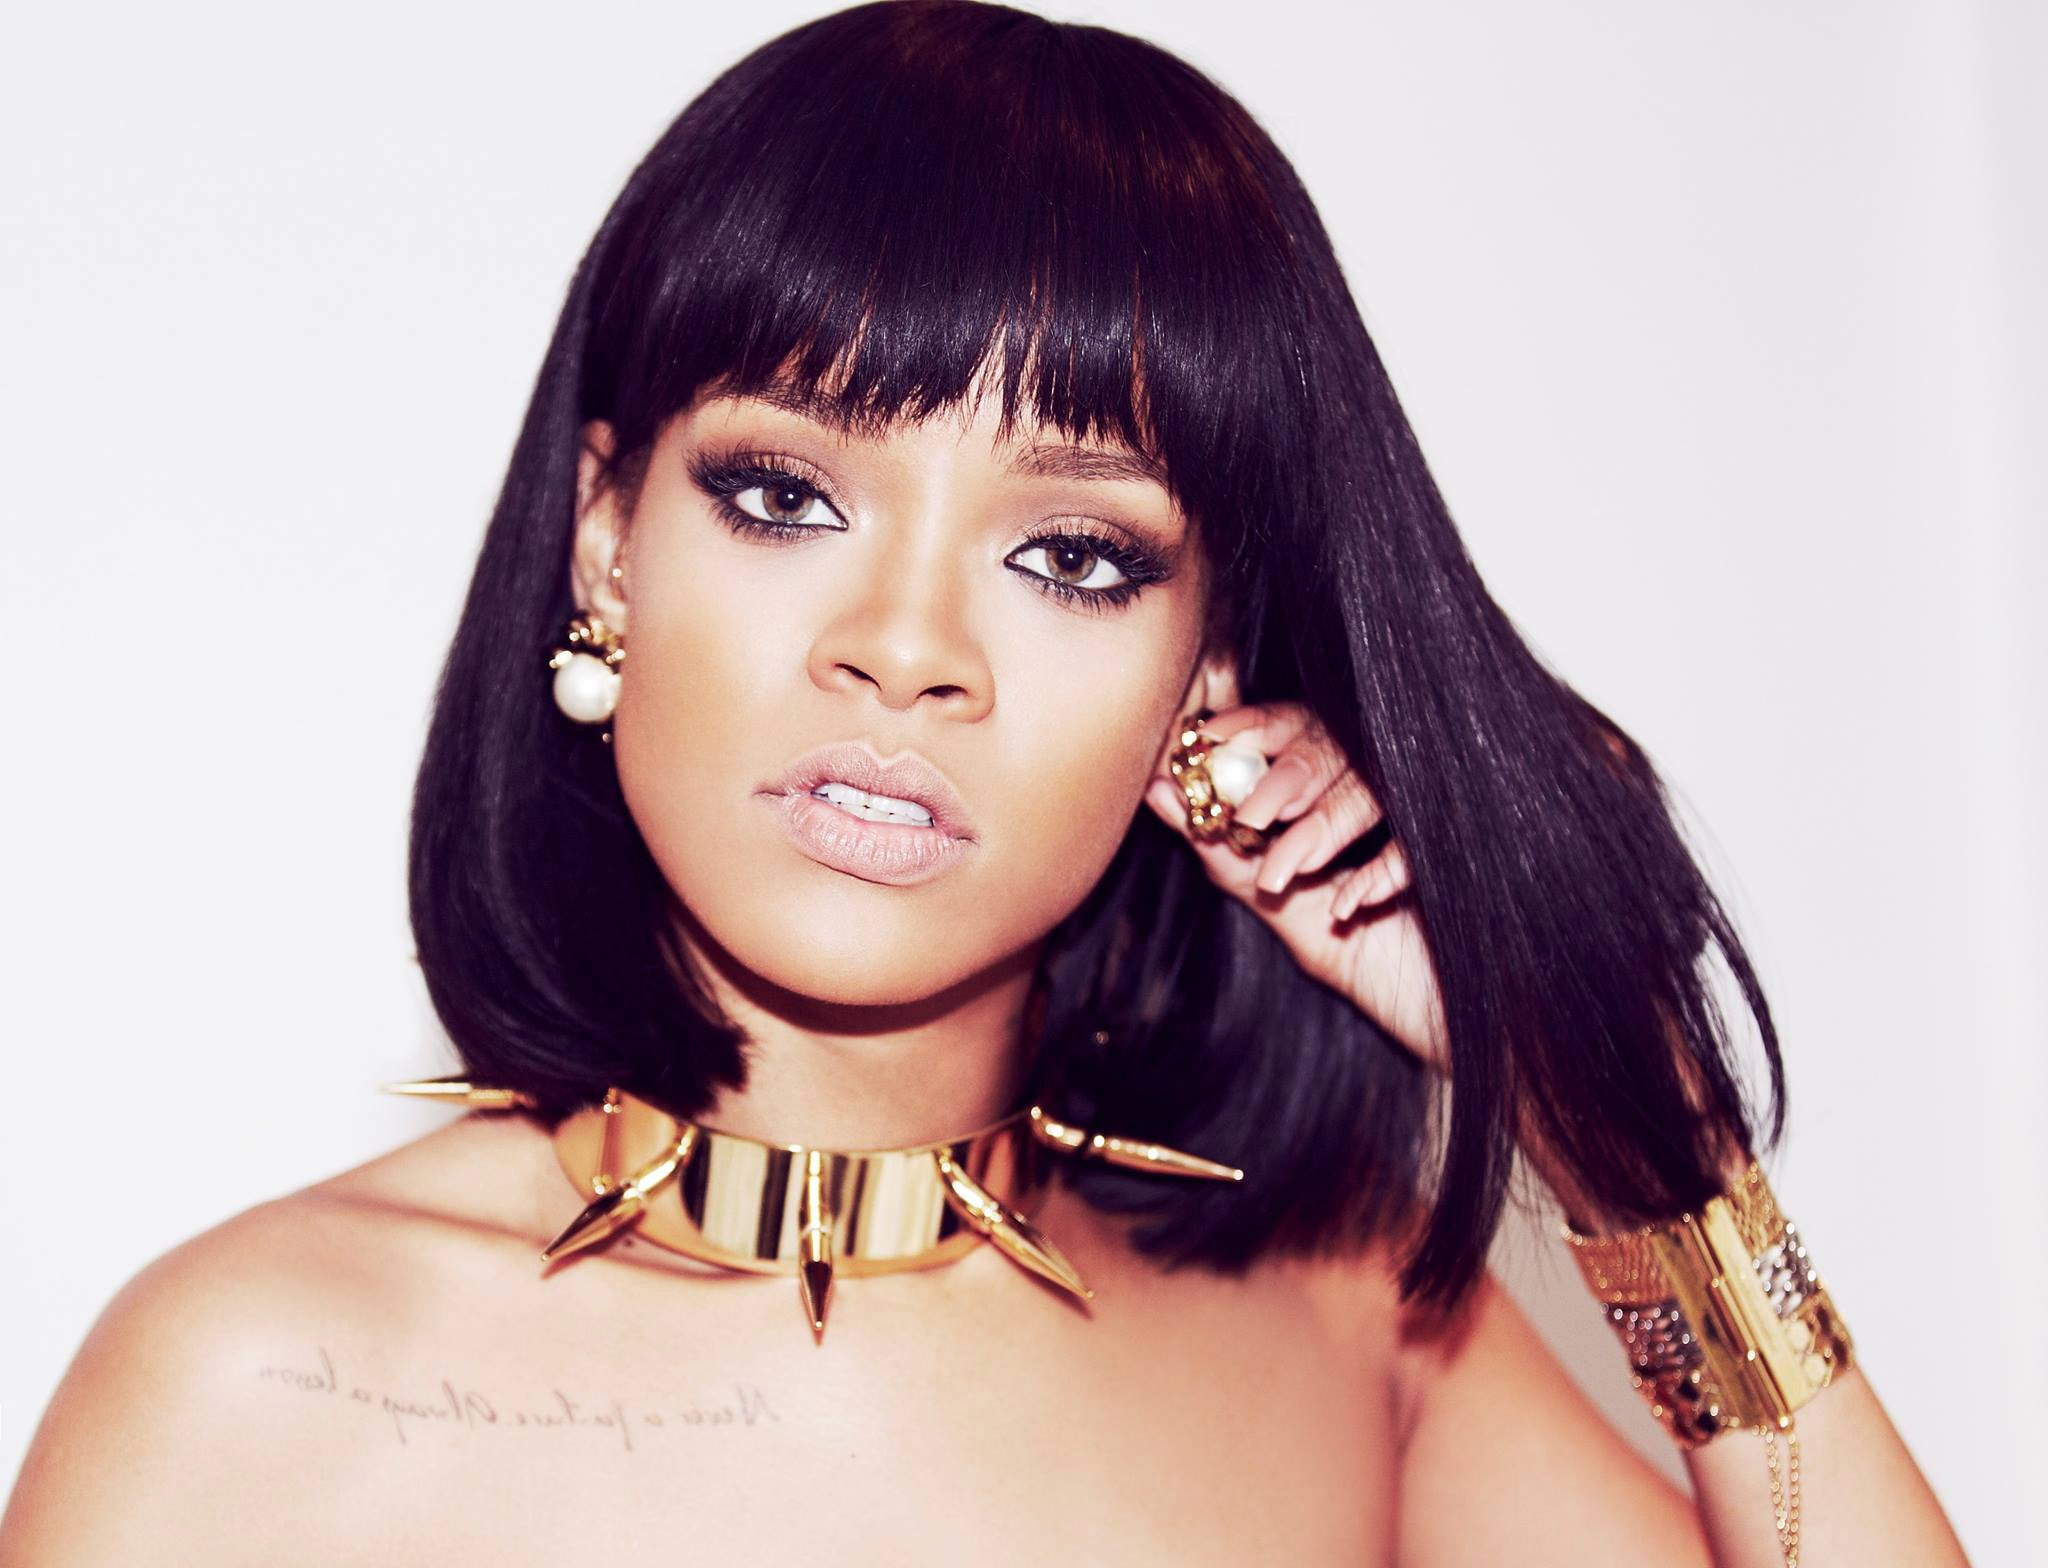 Rihanna, singer, actress, Brunette, girl, face, makeup, jewelry